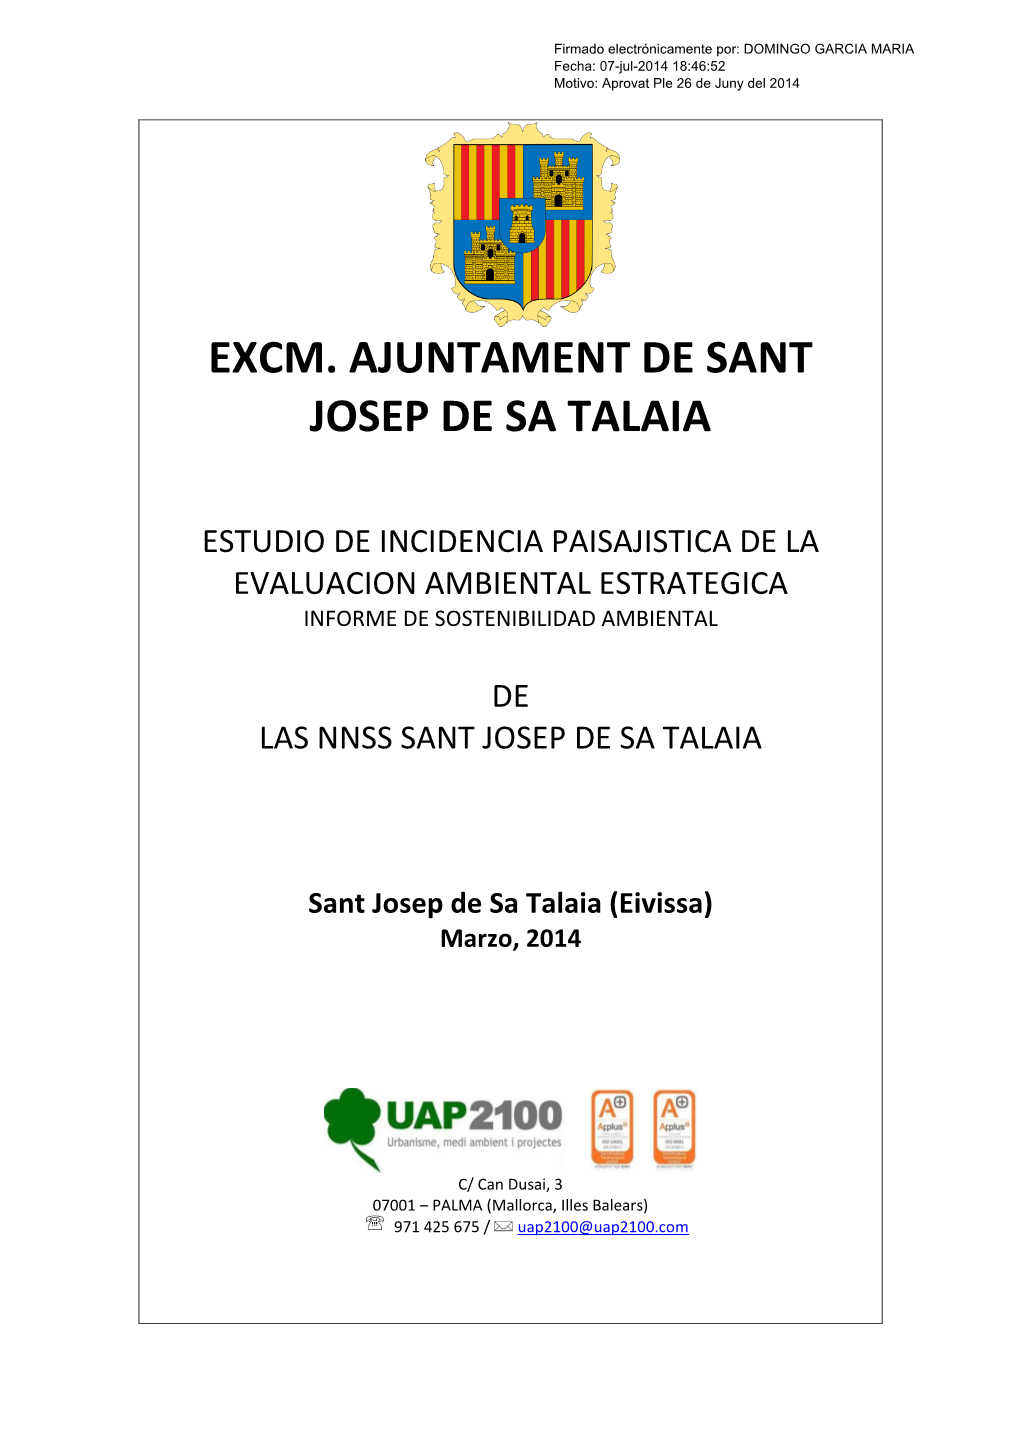 Excm. Ajuntament De Sant Josep De Sa Talaia